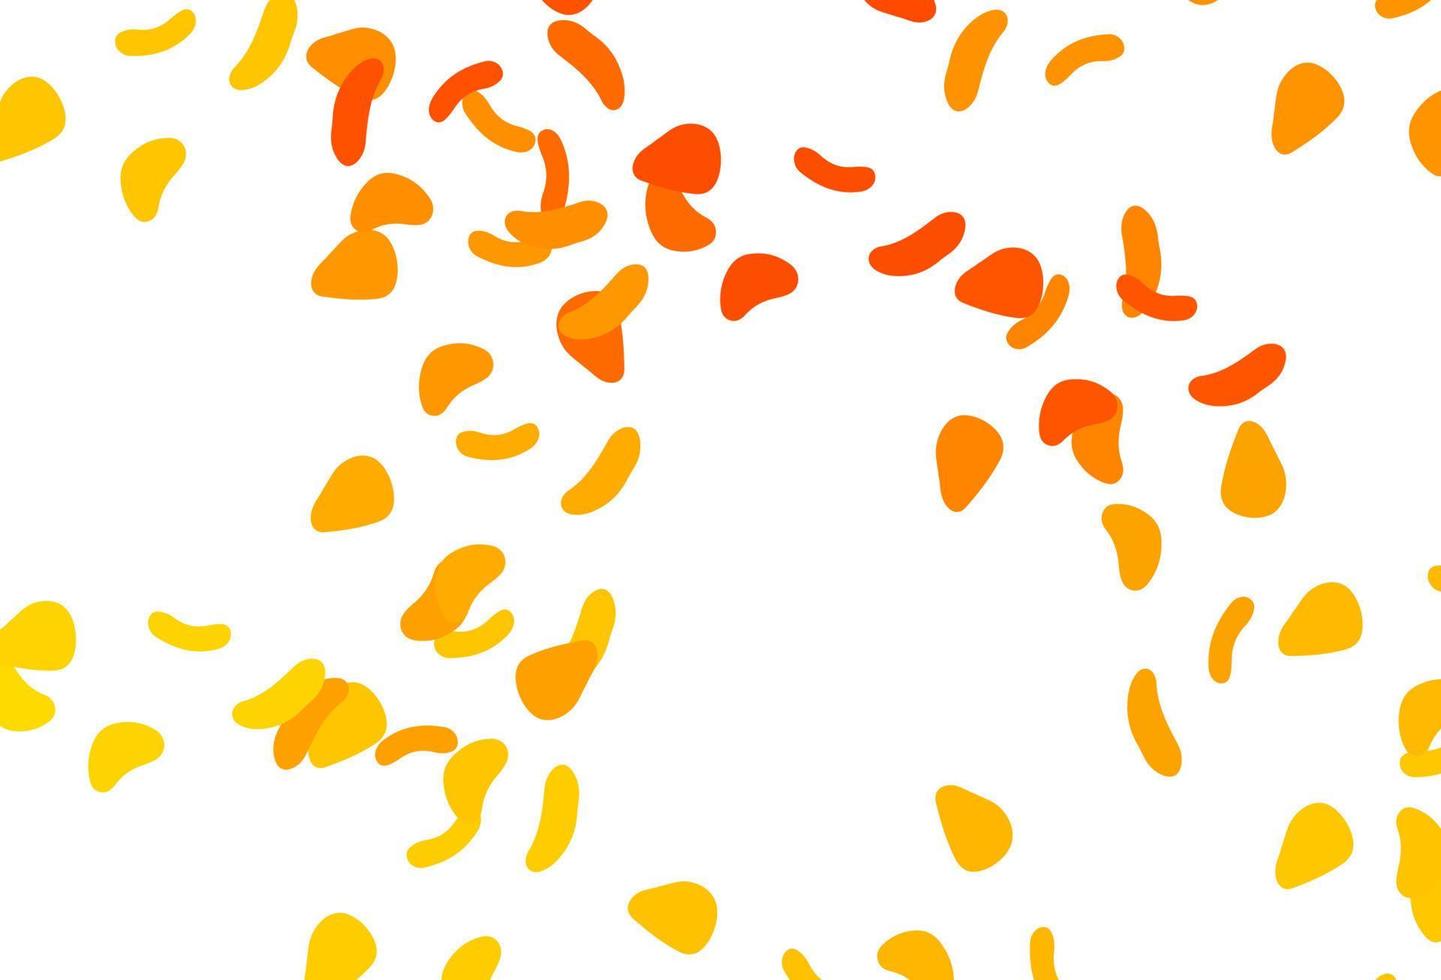 motif vectoriel jaune clair et orange avec des formes chaotiques.